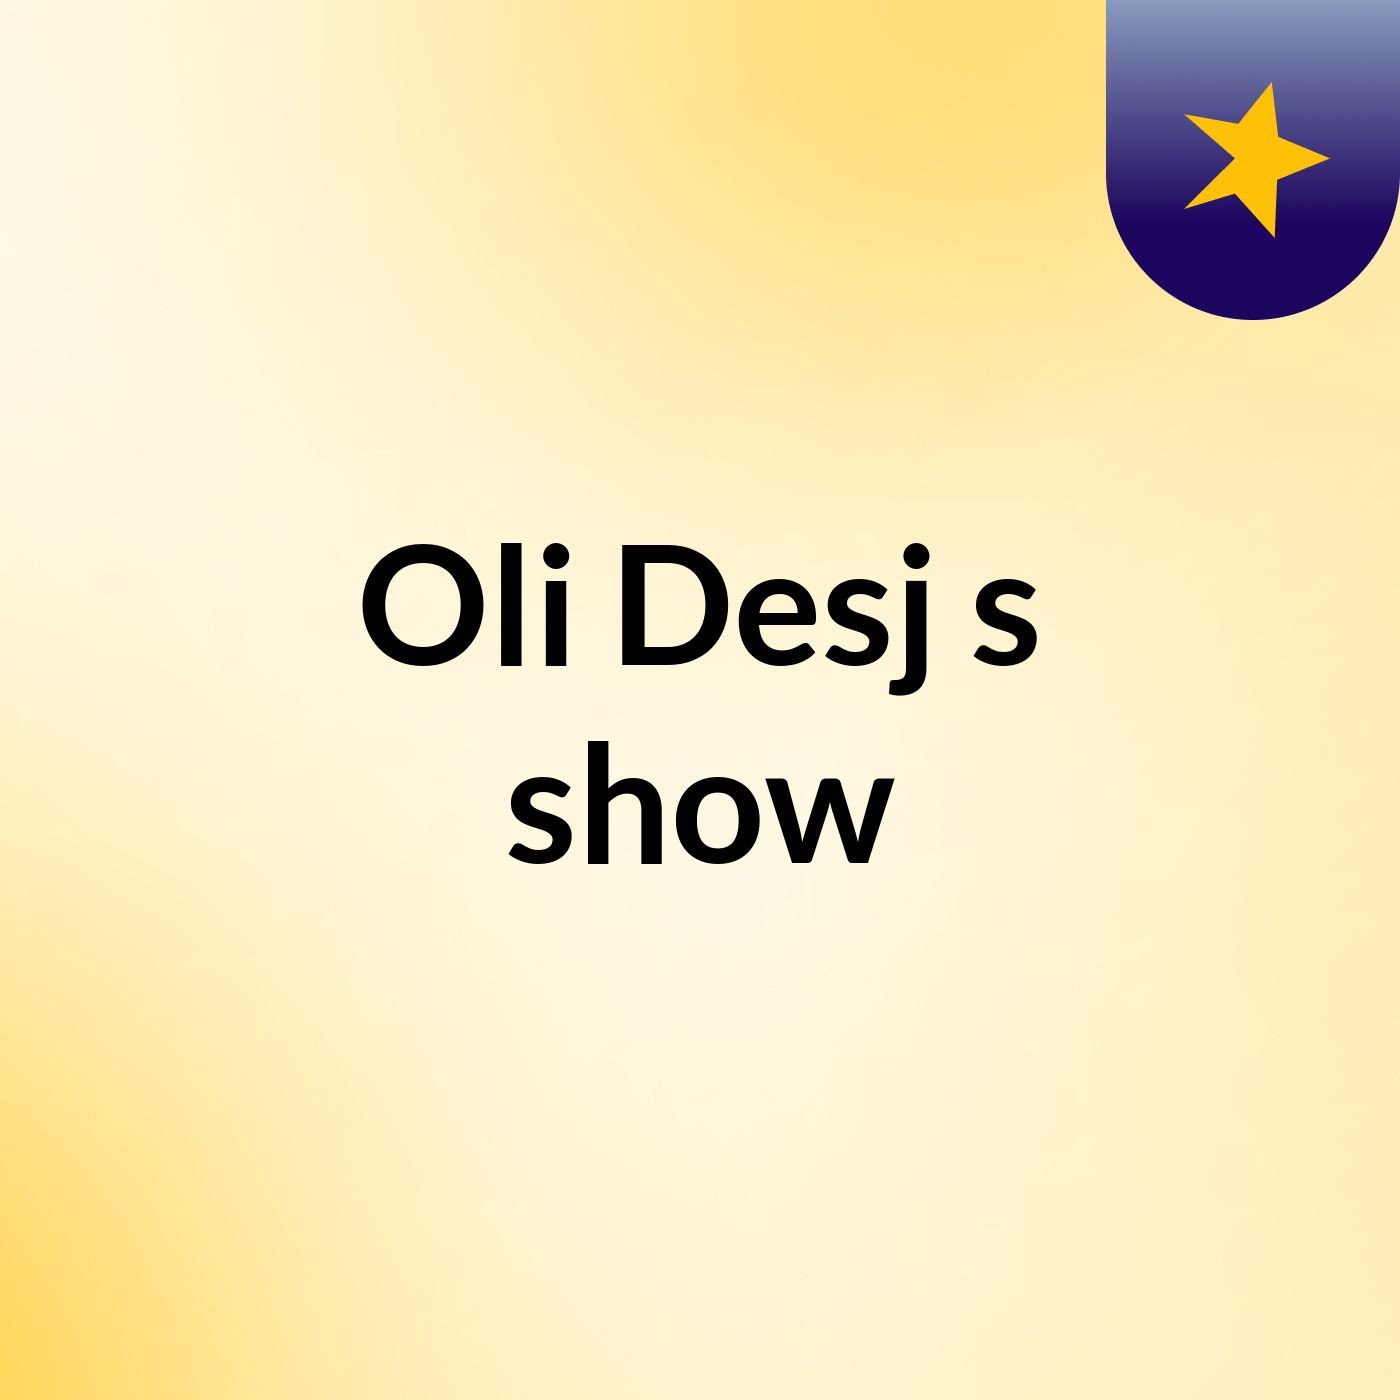 Oli Desj's show